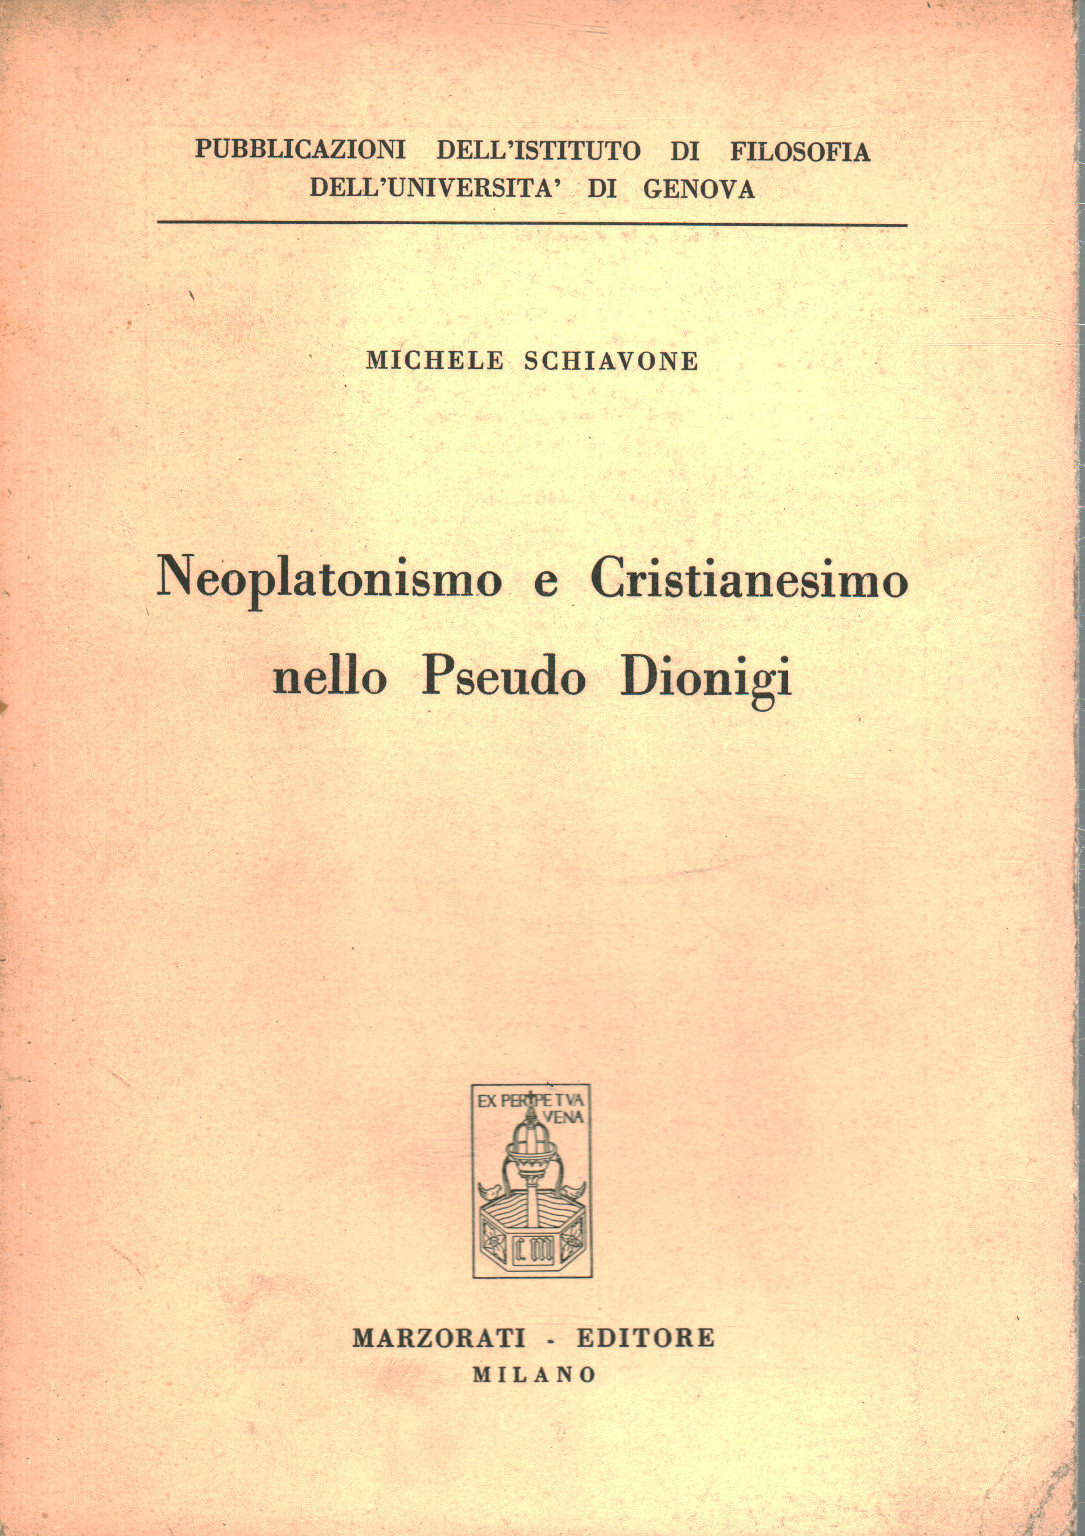 Neoplatonismo e Cristianesimo nello Pseudo Dionigi, s.a.